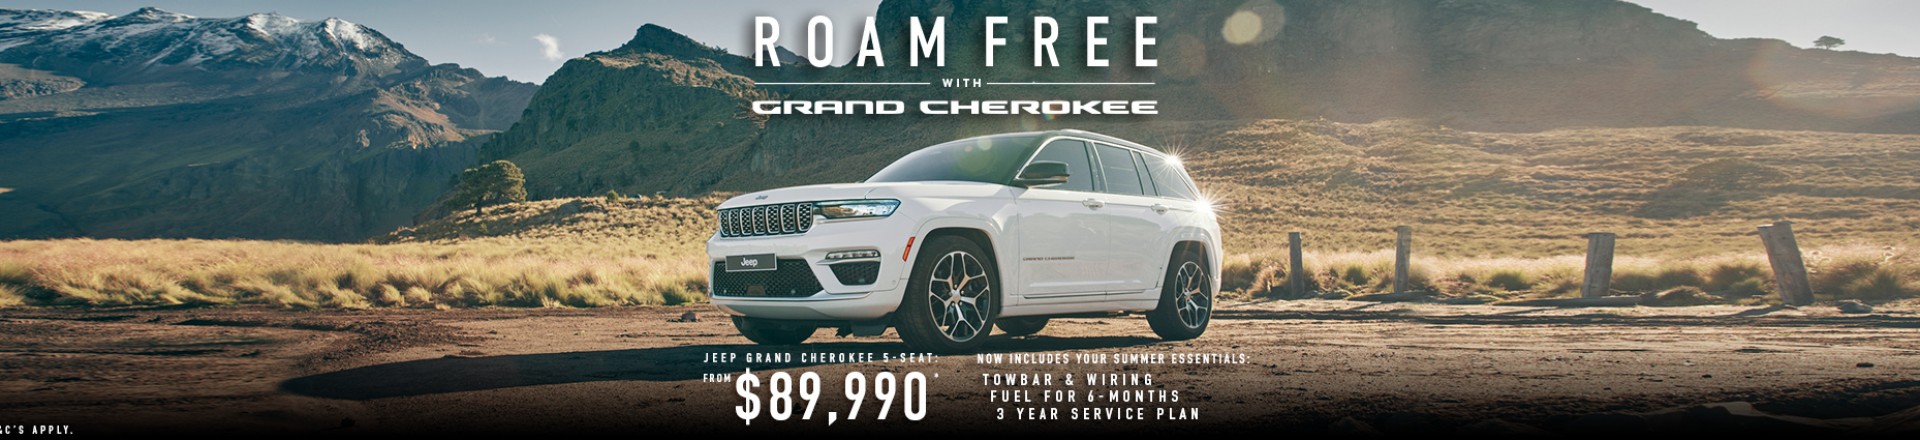 Grand Cherokee Roam Free